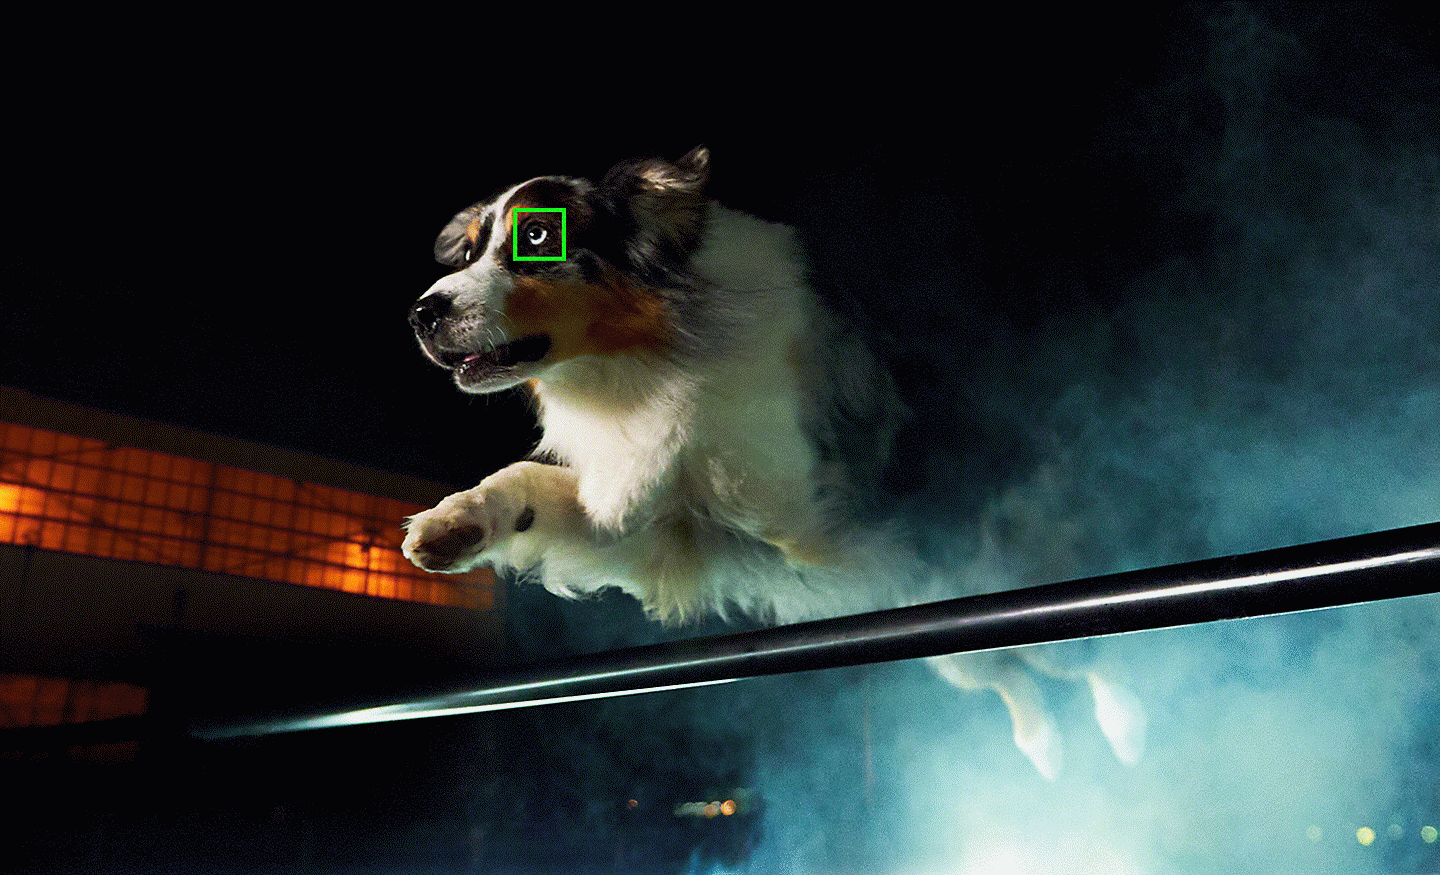 Snímek skákajícího psa pořízený za slabého osvětlení se zeleným bodem automatického ostření překrývajícím jeho oko